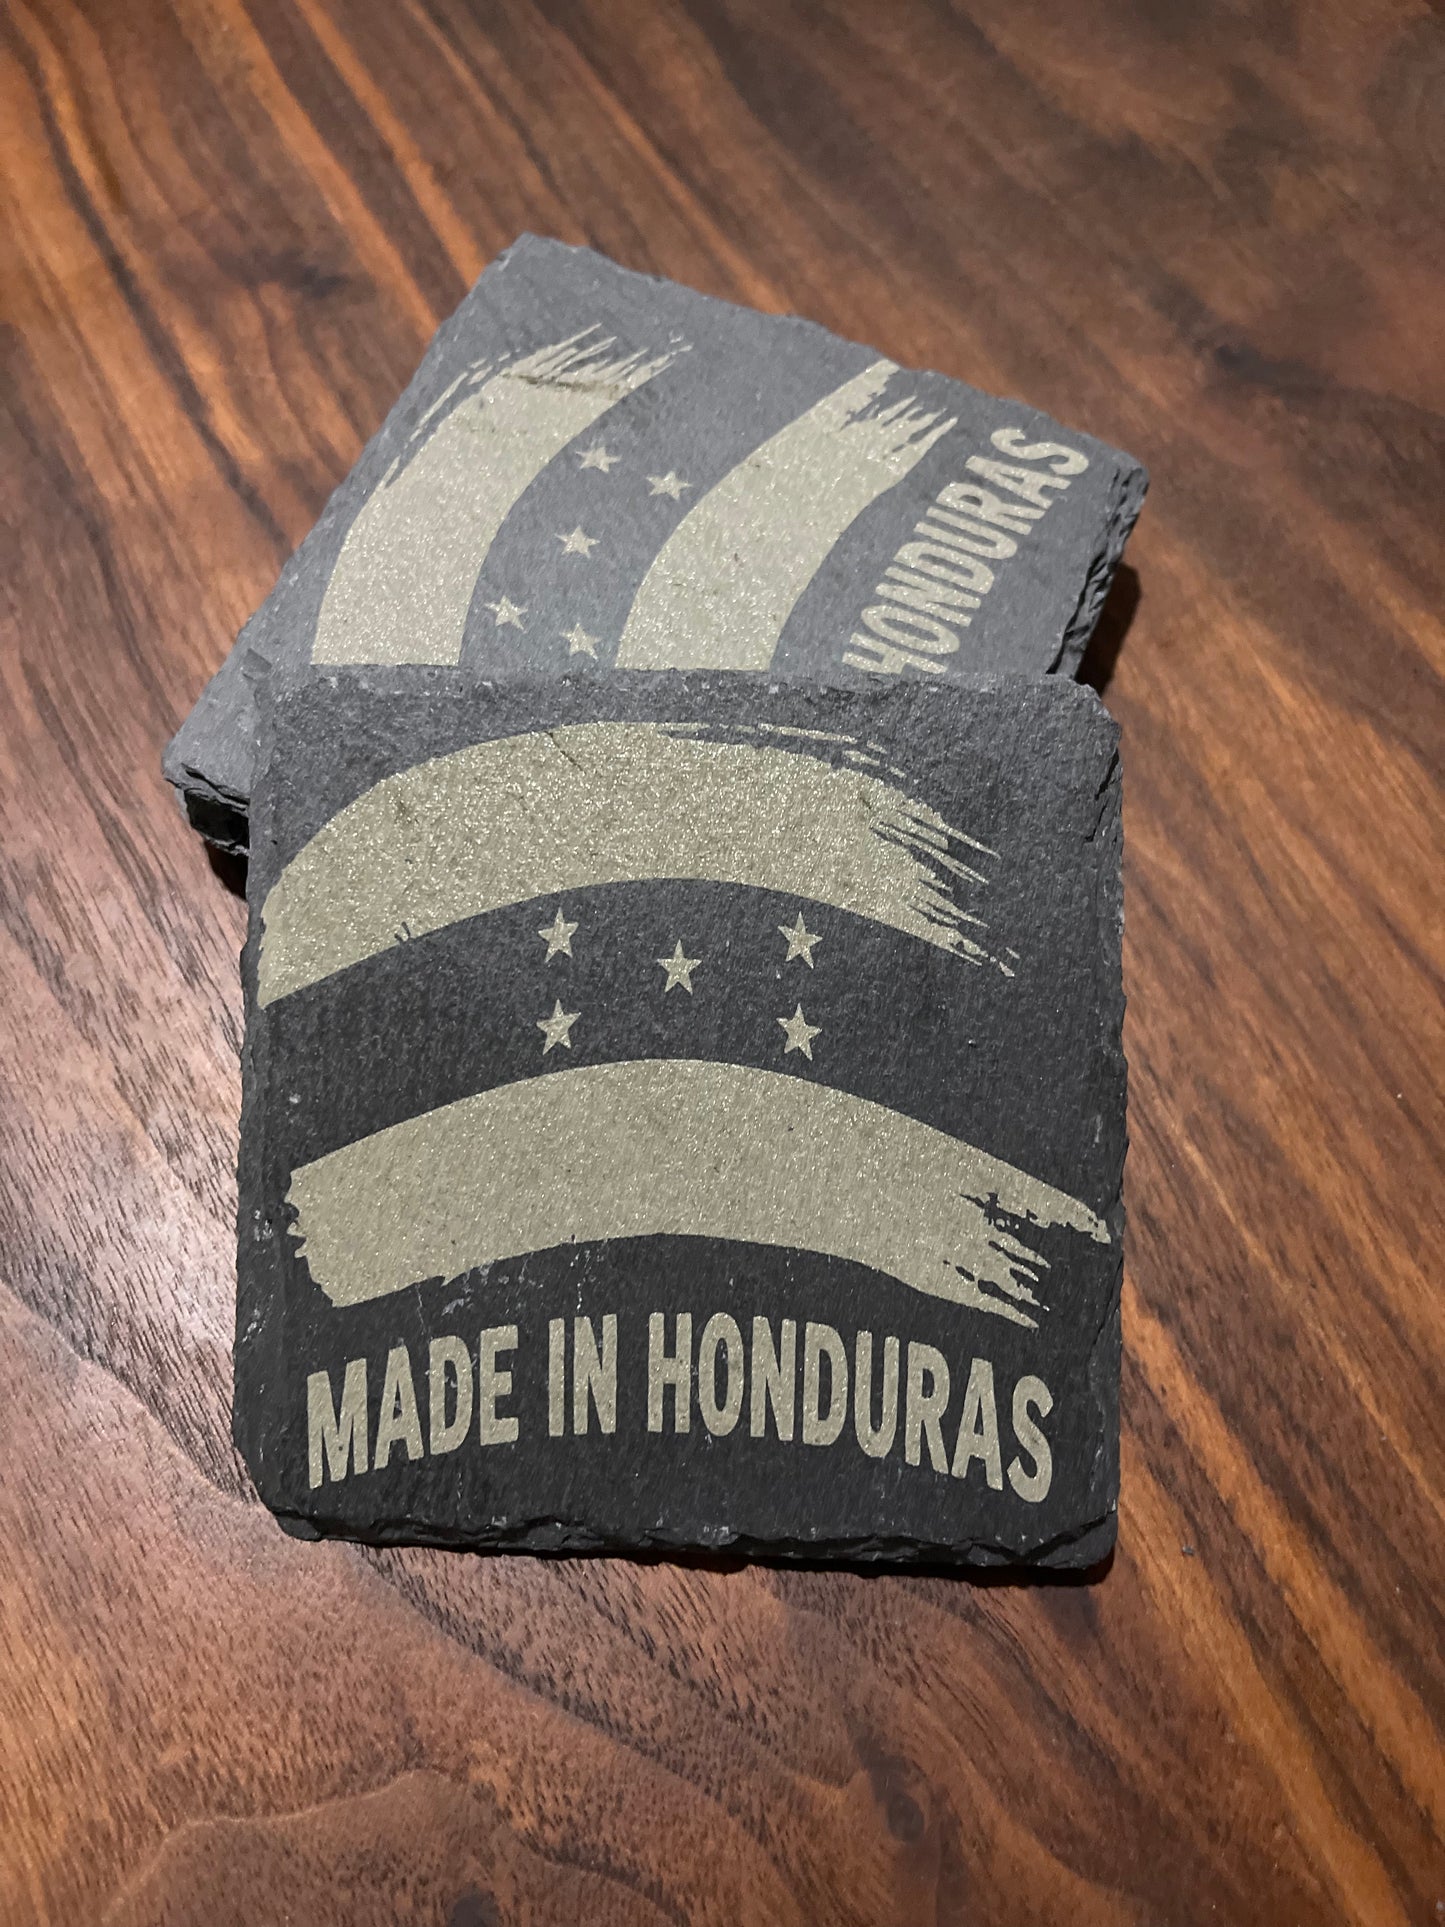 Slate Coasters Laser Engraved “Made in Honduras”